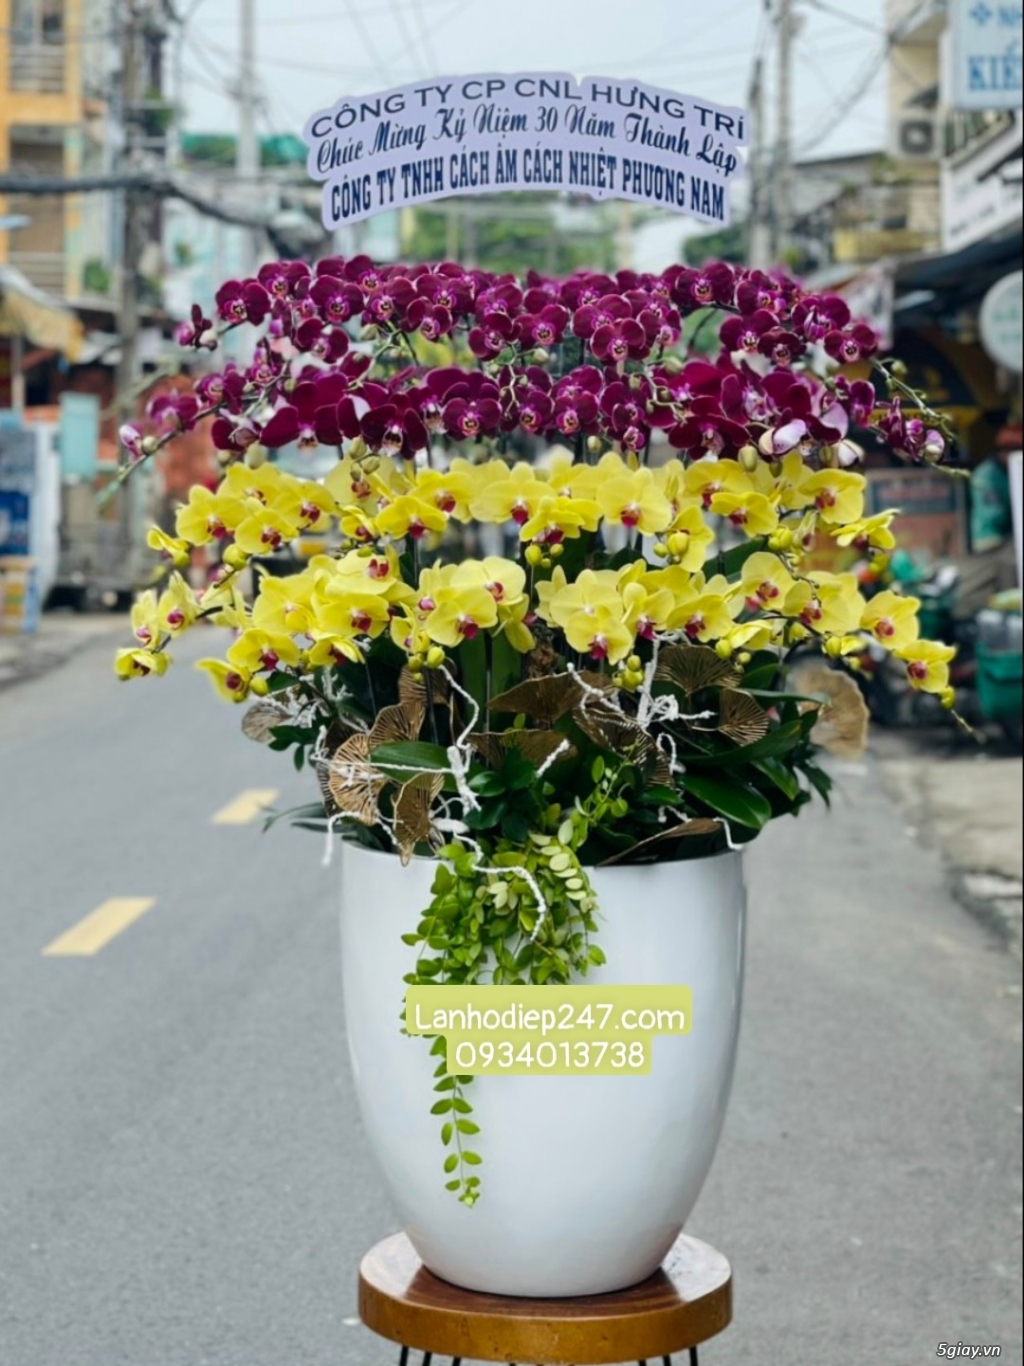 Shop hoa tuoi 24/7 tphcm phục vụ hoa lan hồ điệp uy tín toàn quốc - 20